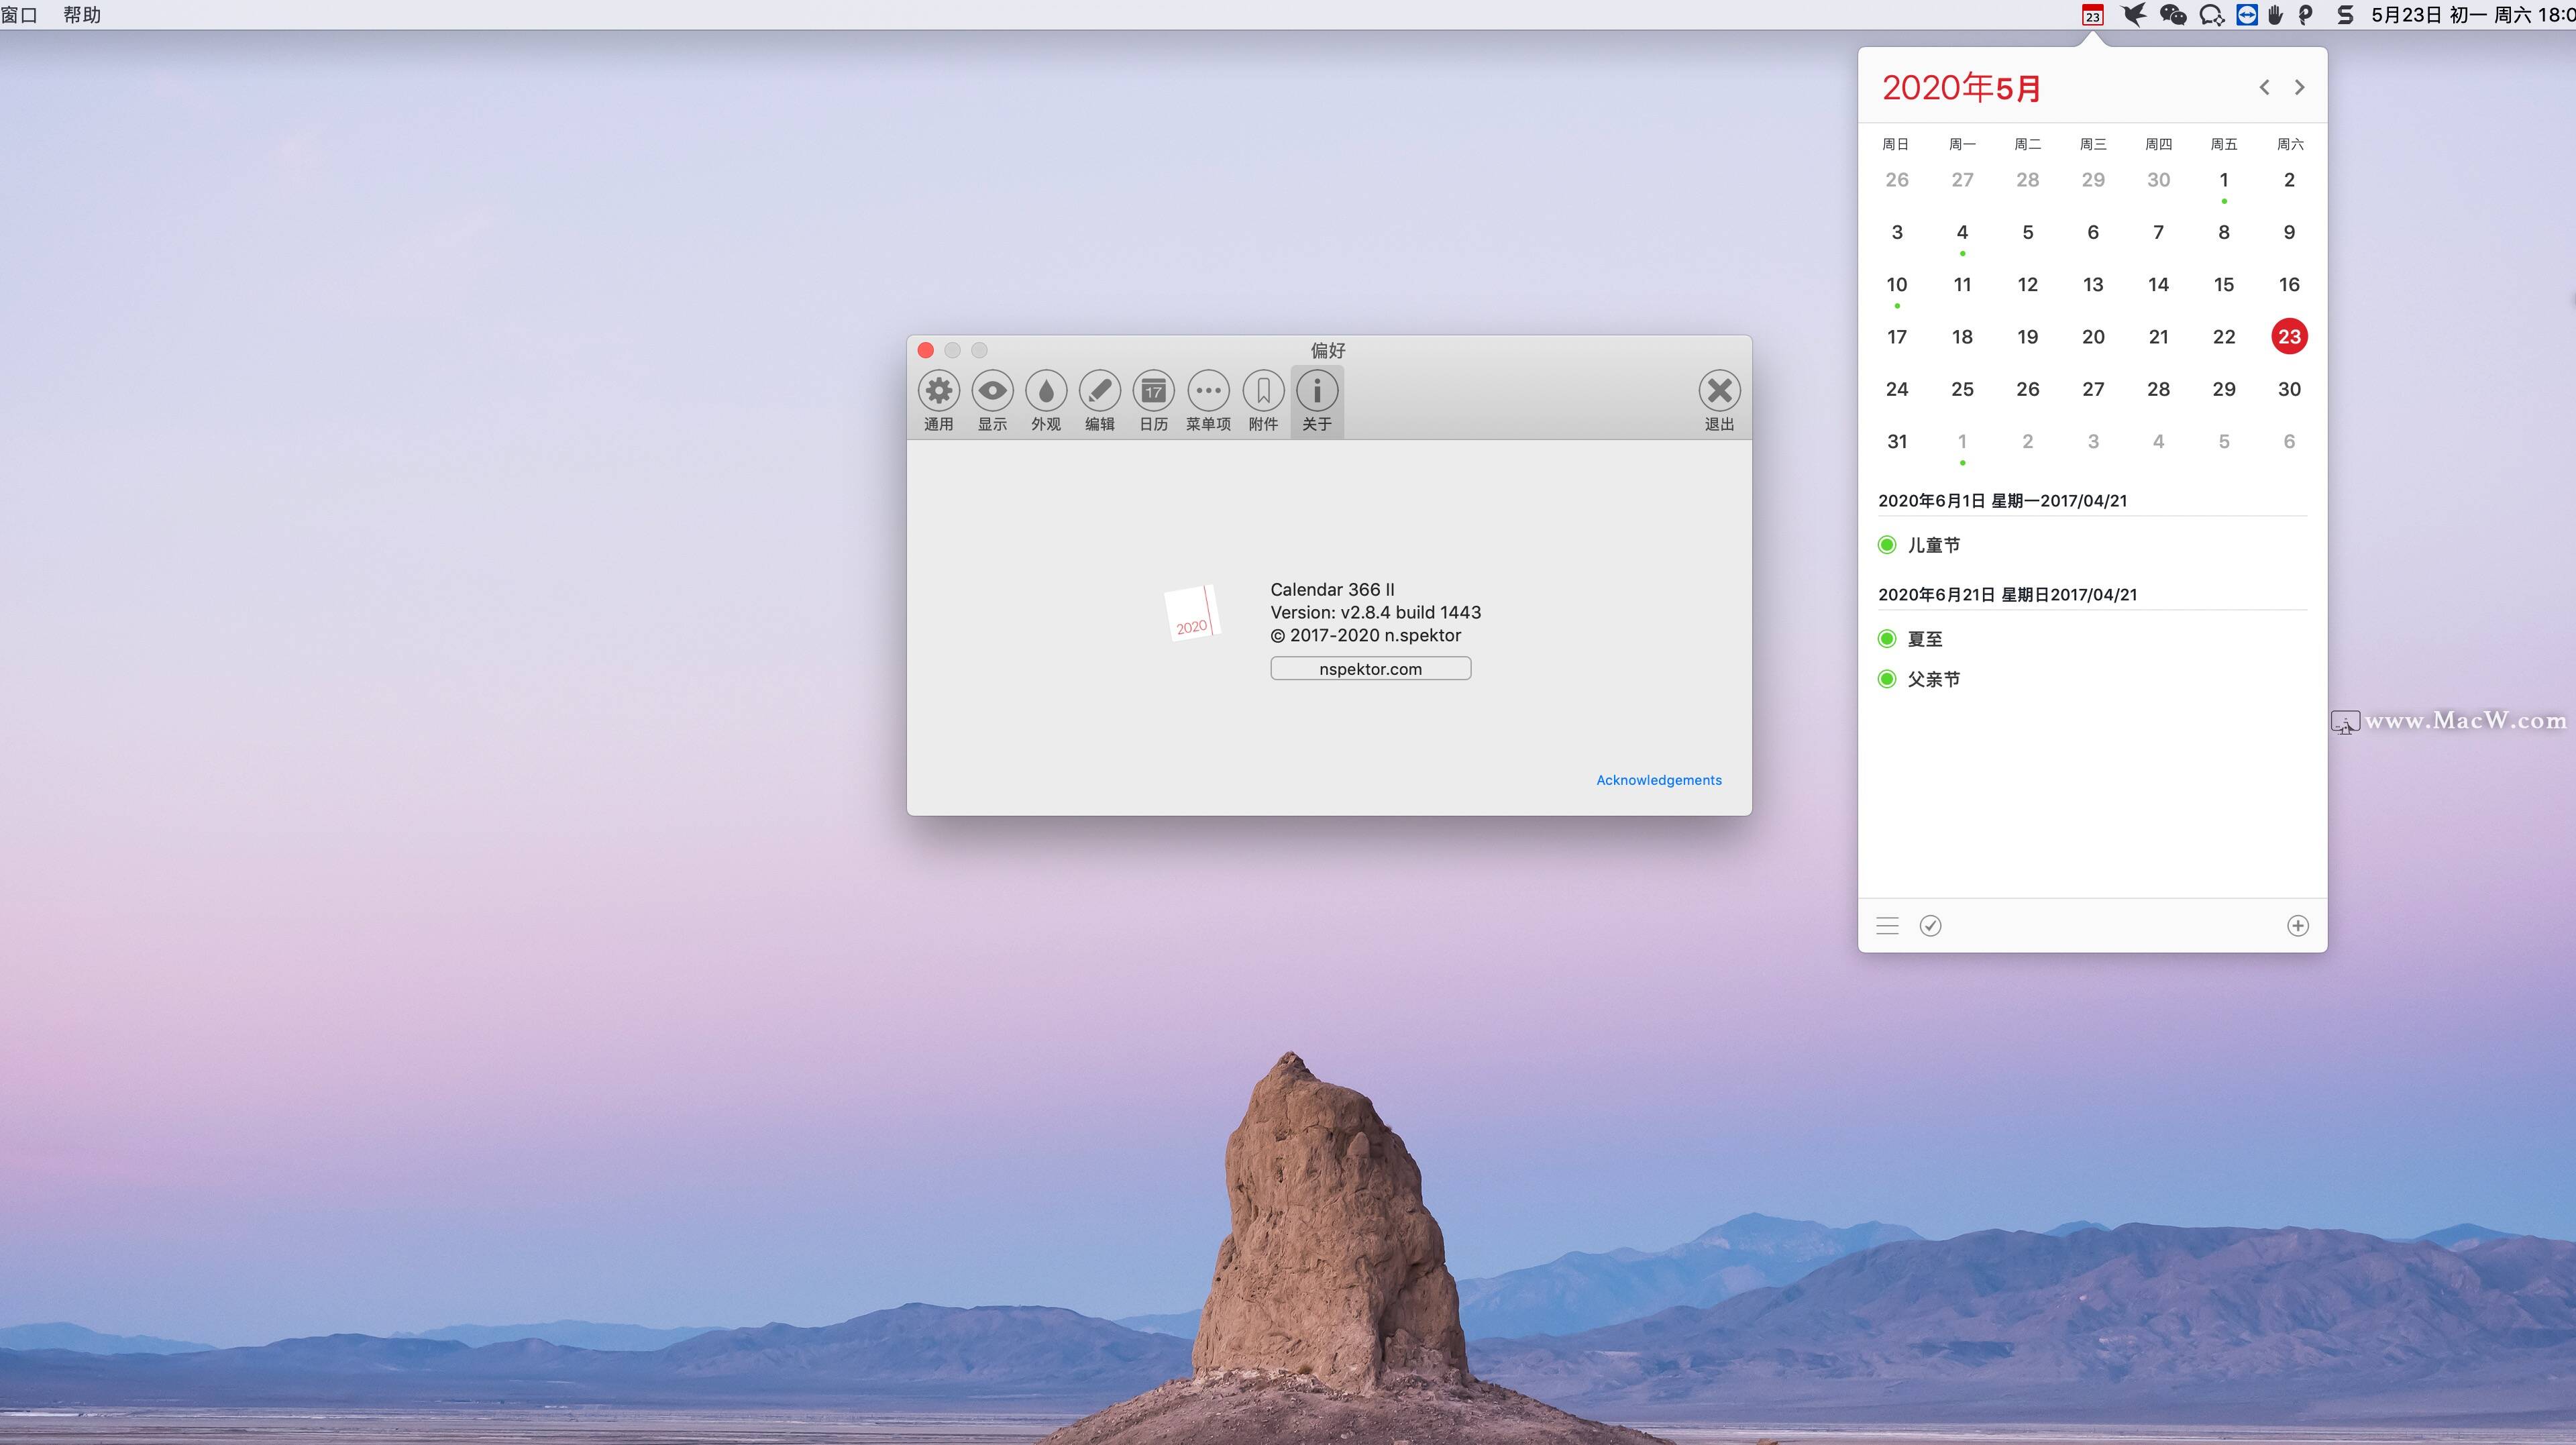 Calendar 366 II for Mac是一款什么工具